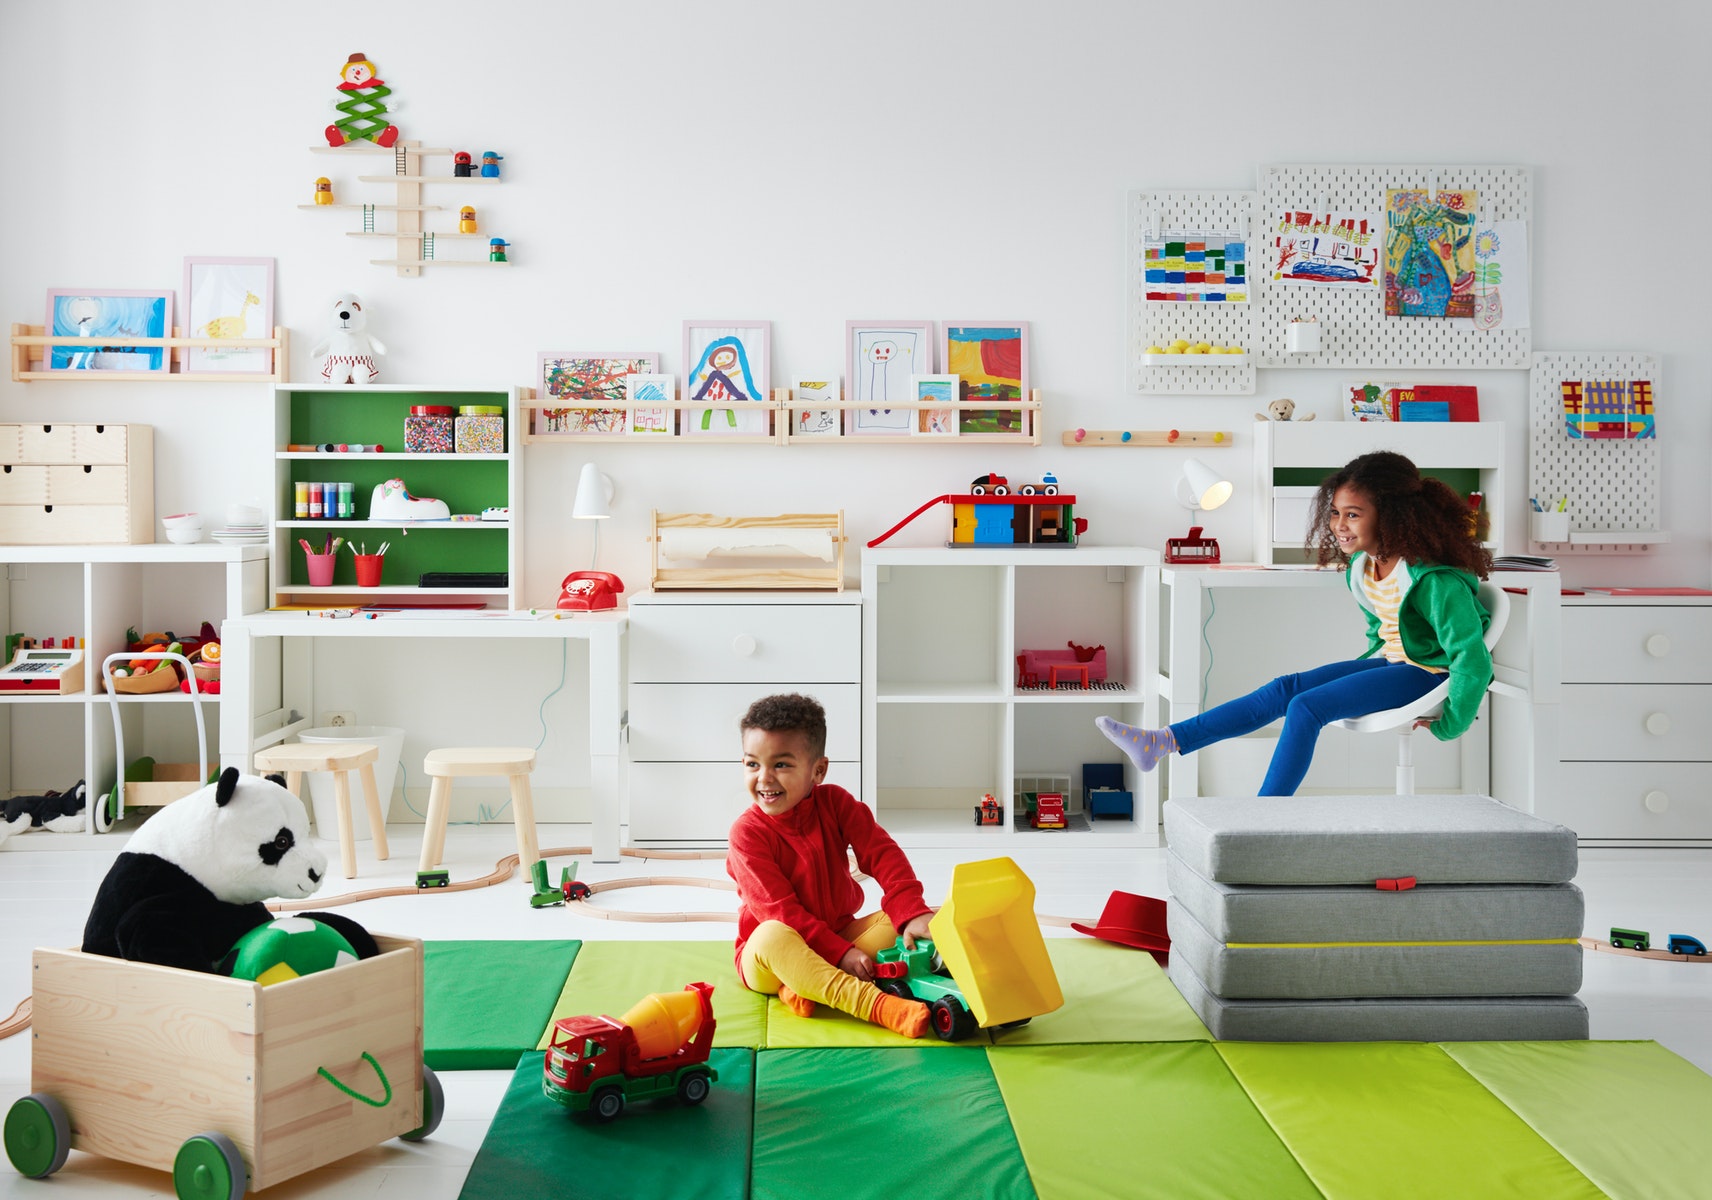 Si Kecil Bosan Belajar di Rumah? IKEA Bagikan Tips Agar Ruang Belajar Terasa Aman dan Menyenangkan